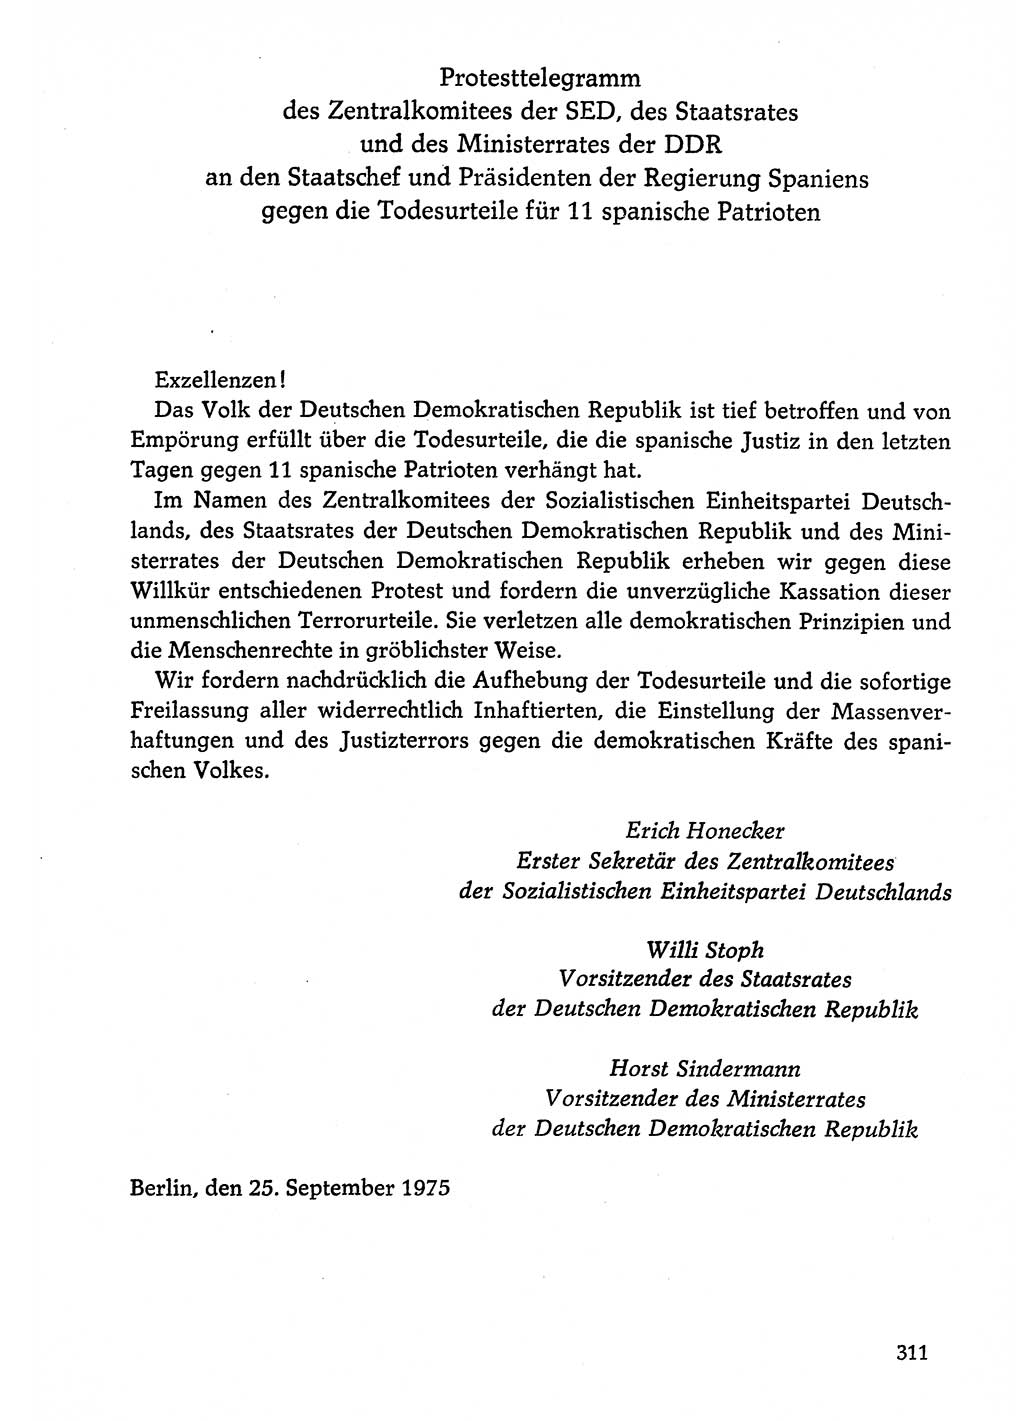 Dokumente der Sozialistischen Einheitspartei Deutschlands (SED) [Deutsche Demokratische Republik (DDR)] 1974-1975, Seite 311 (Dok. SED DDR 1978, Bd. ⅩⅤ, S. 311)